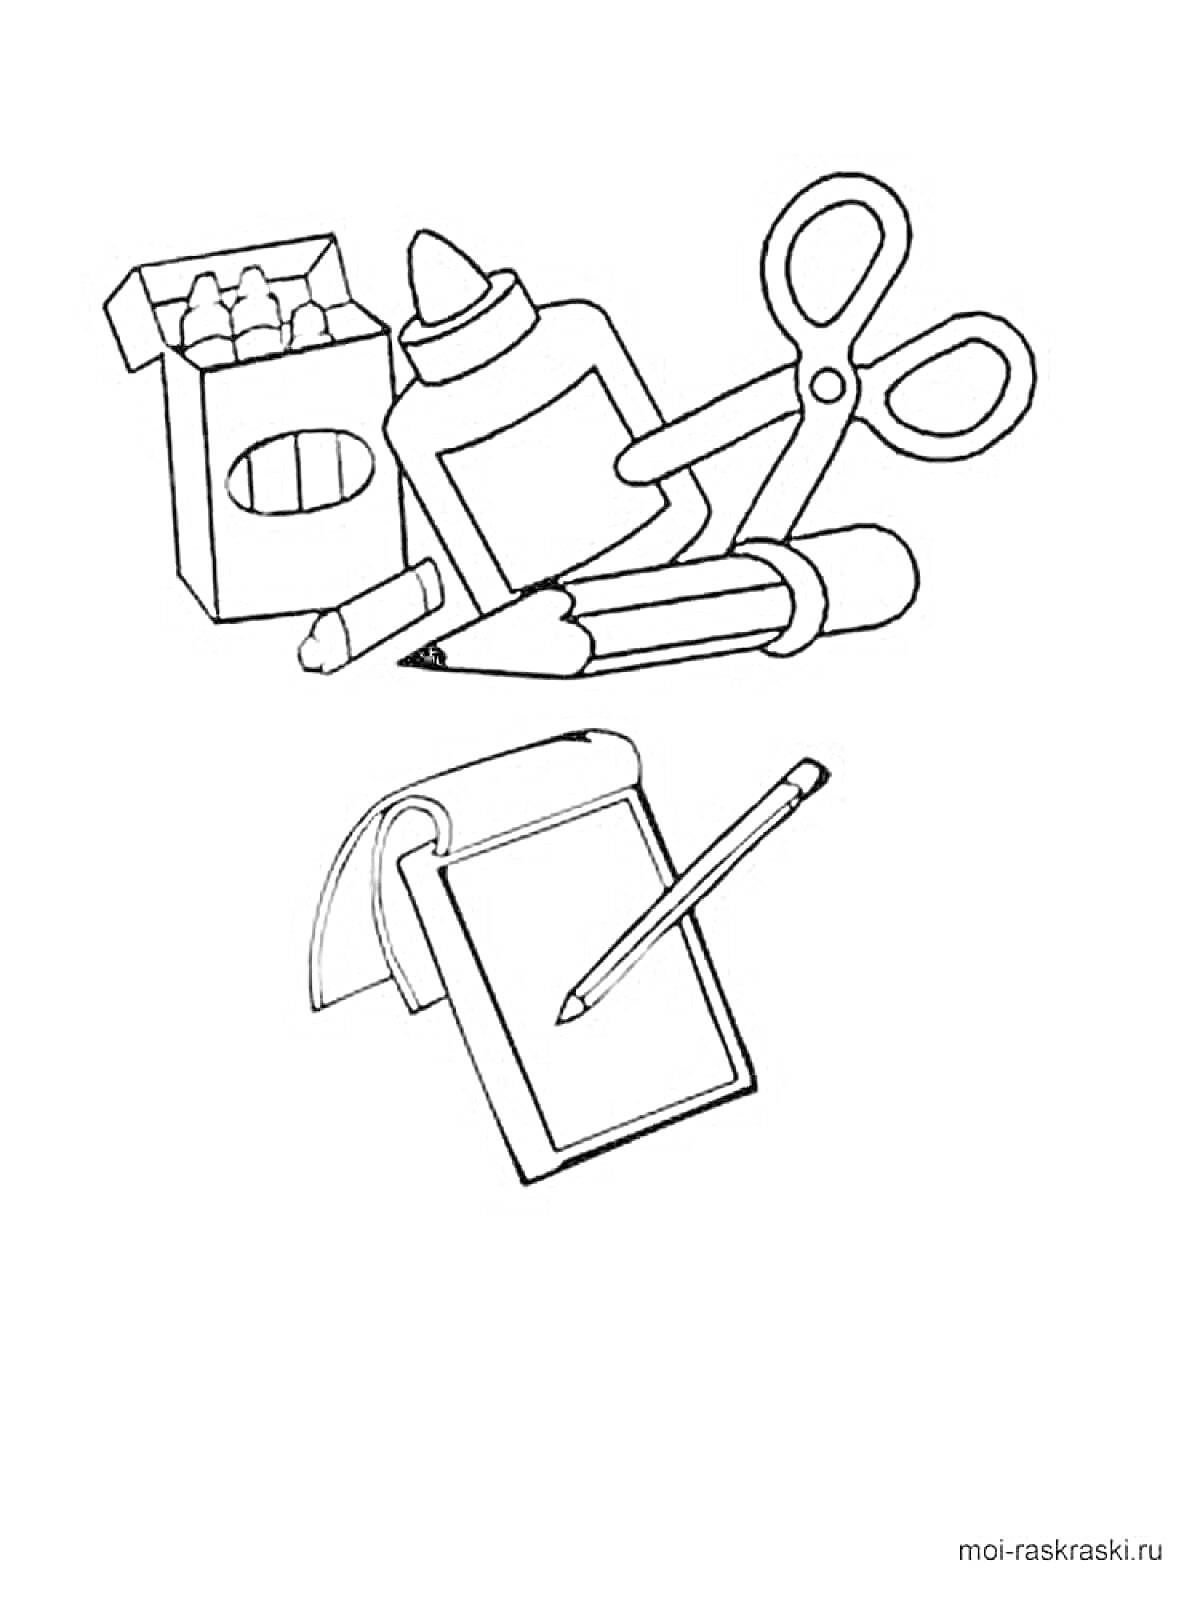 Раскраска Школьные принадлежности: коробка с мелками, бутылка клея, ножницы, карандаш, точилка, блокнот и ручка